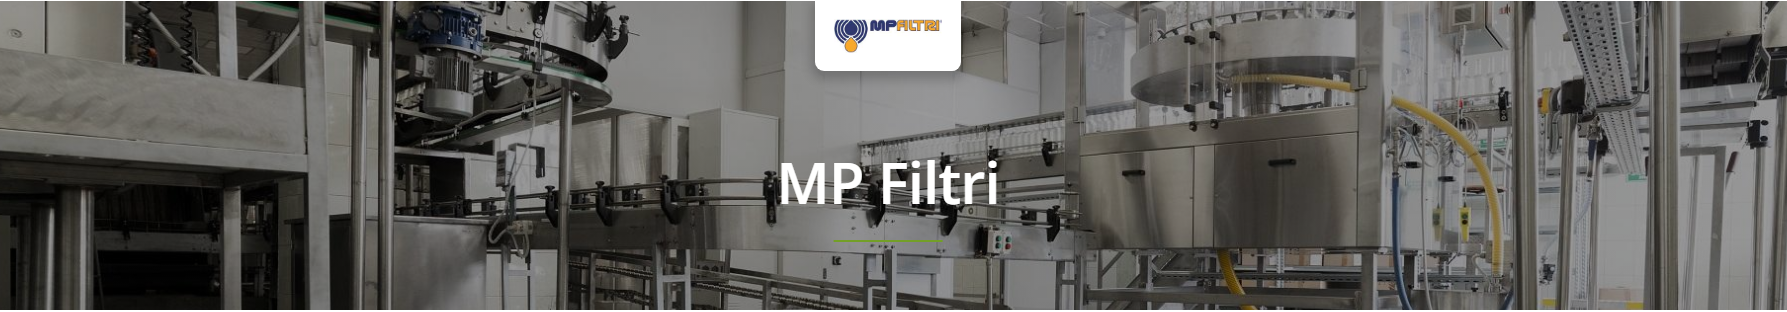 MP Filtri Filtration Accessories